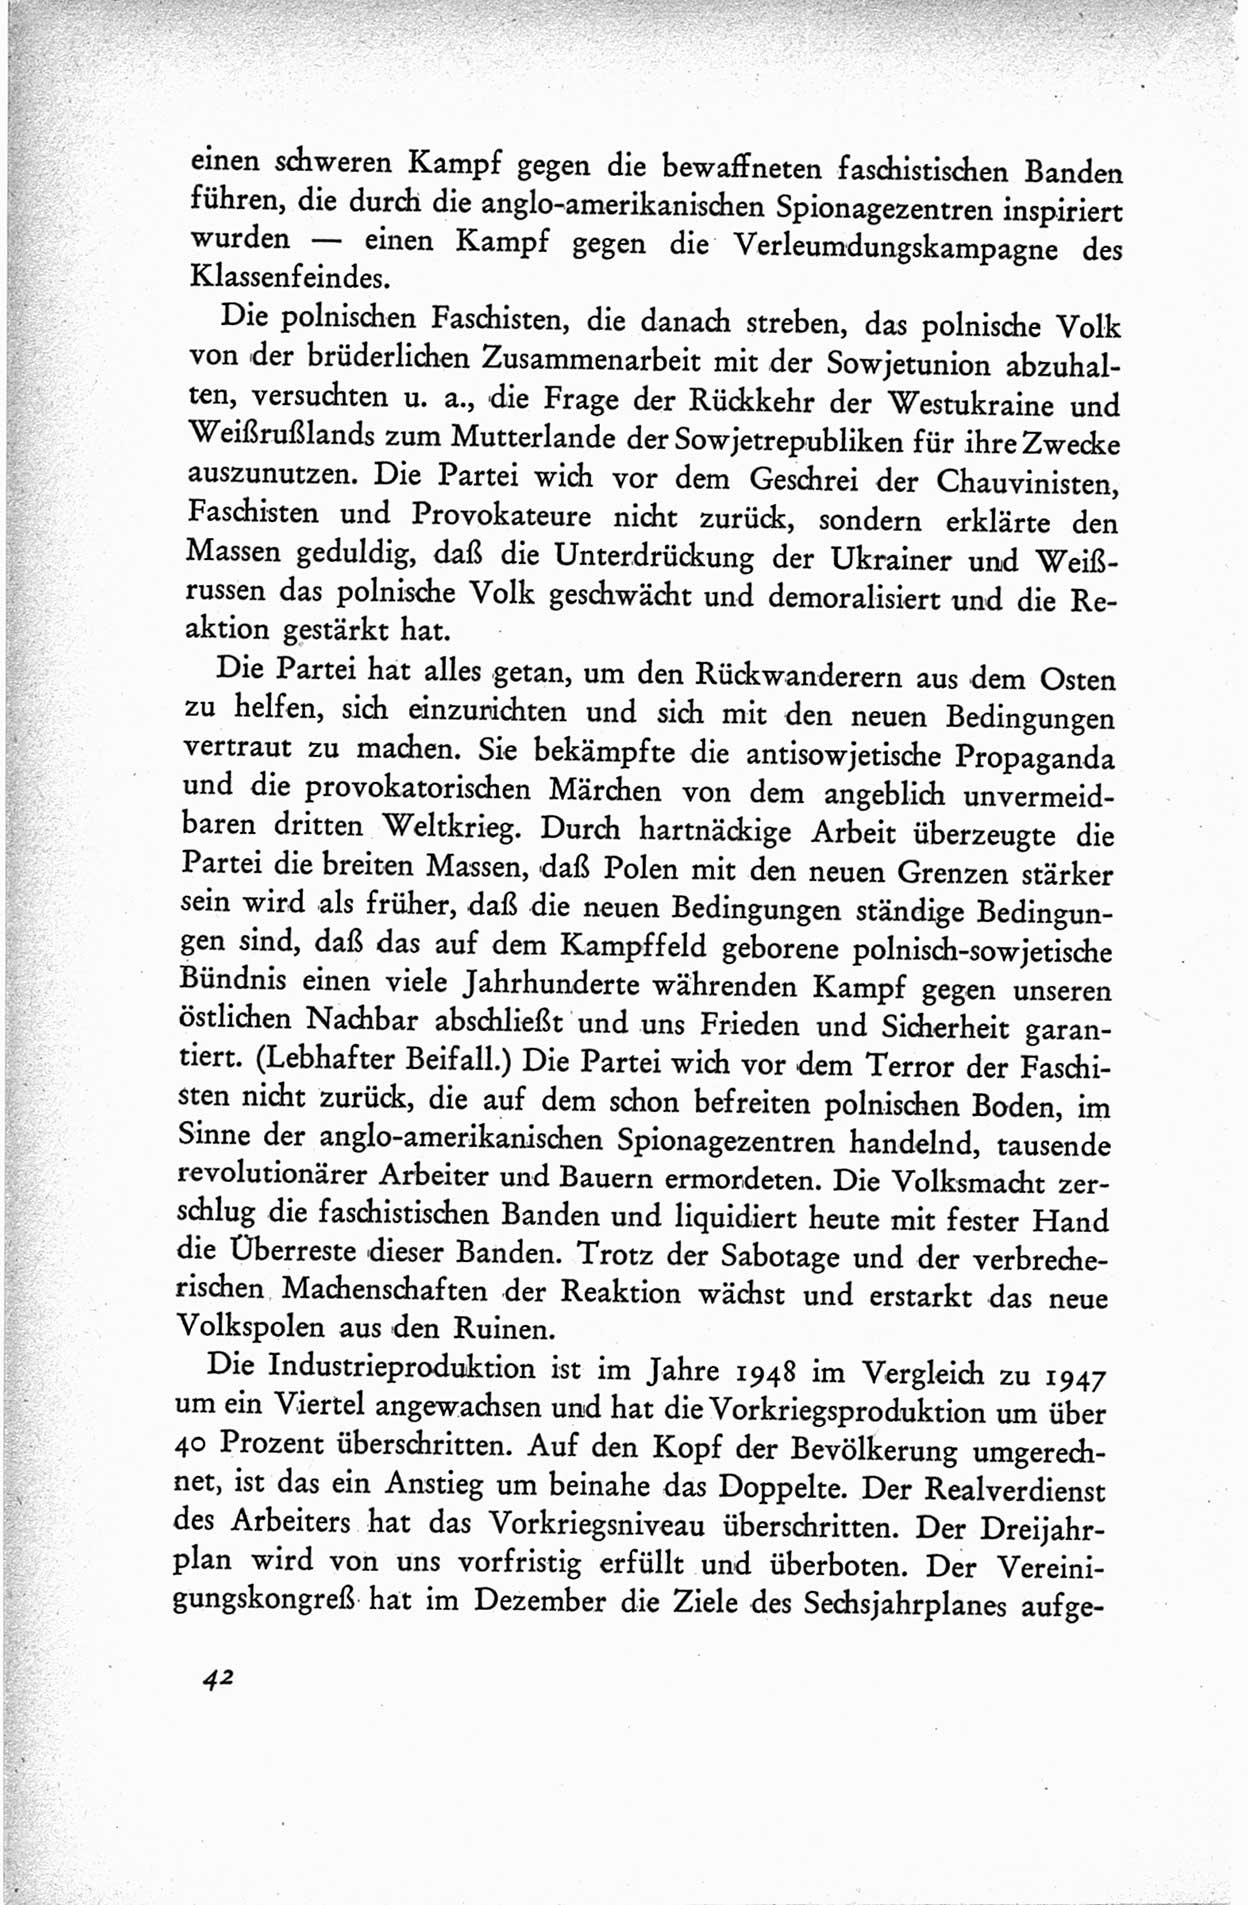 Protokoll der ersten Parteikonferenz der Sozialistischen Einheitspartei Deutschlands (SED) [Sowjetische Besatzungszone (SBZ) Deutschlands] vom 25. bis 28. Januar 1949 im Hause der Deutschen Wirtschaftskommission zu Berlin, Seite 42 (Prot. 1. PK SED SBZ Dtl. 1949, S. 42)